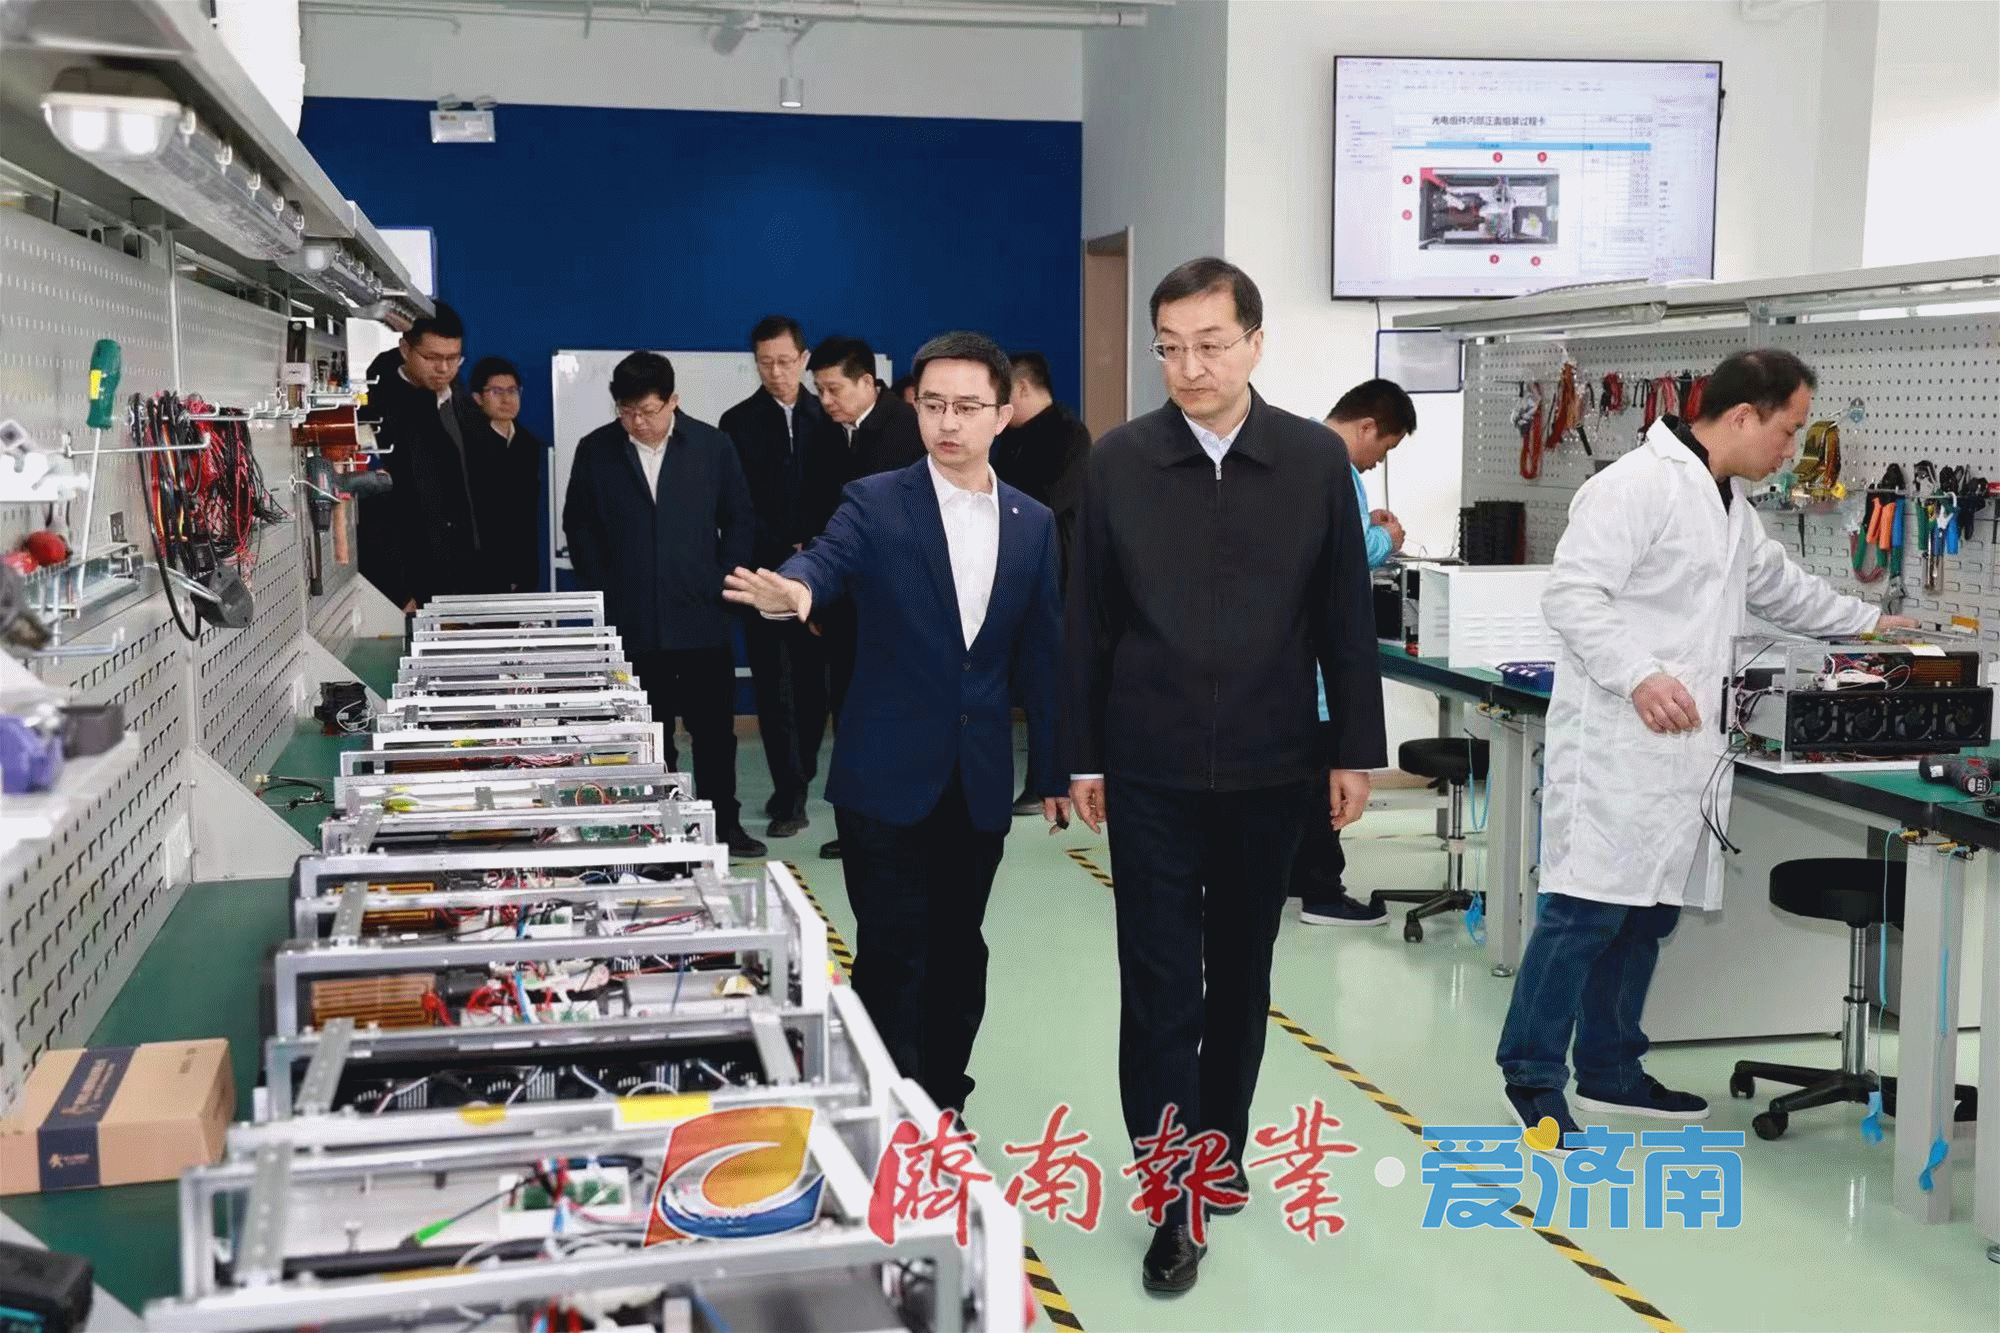 刘强到济南高新区调研时强调：大力发展新质生产力 为强省会建设作出更大贡献